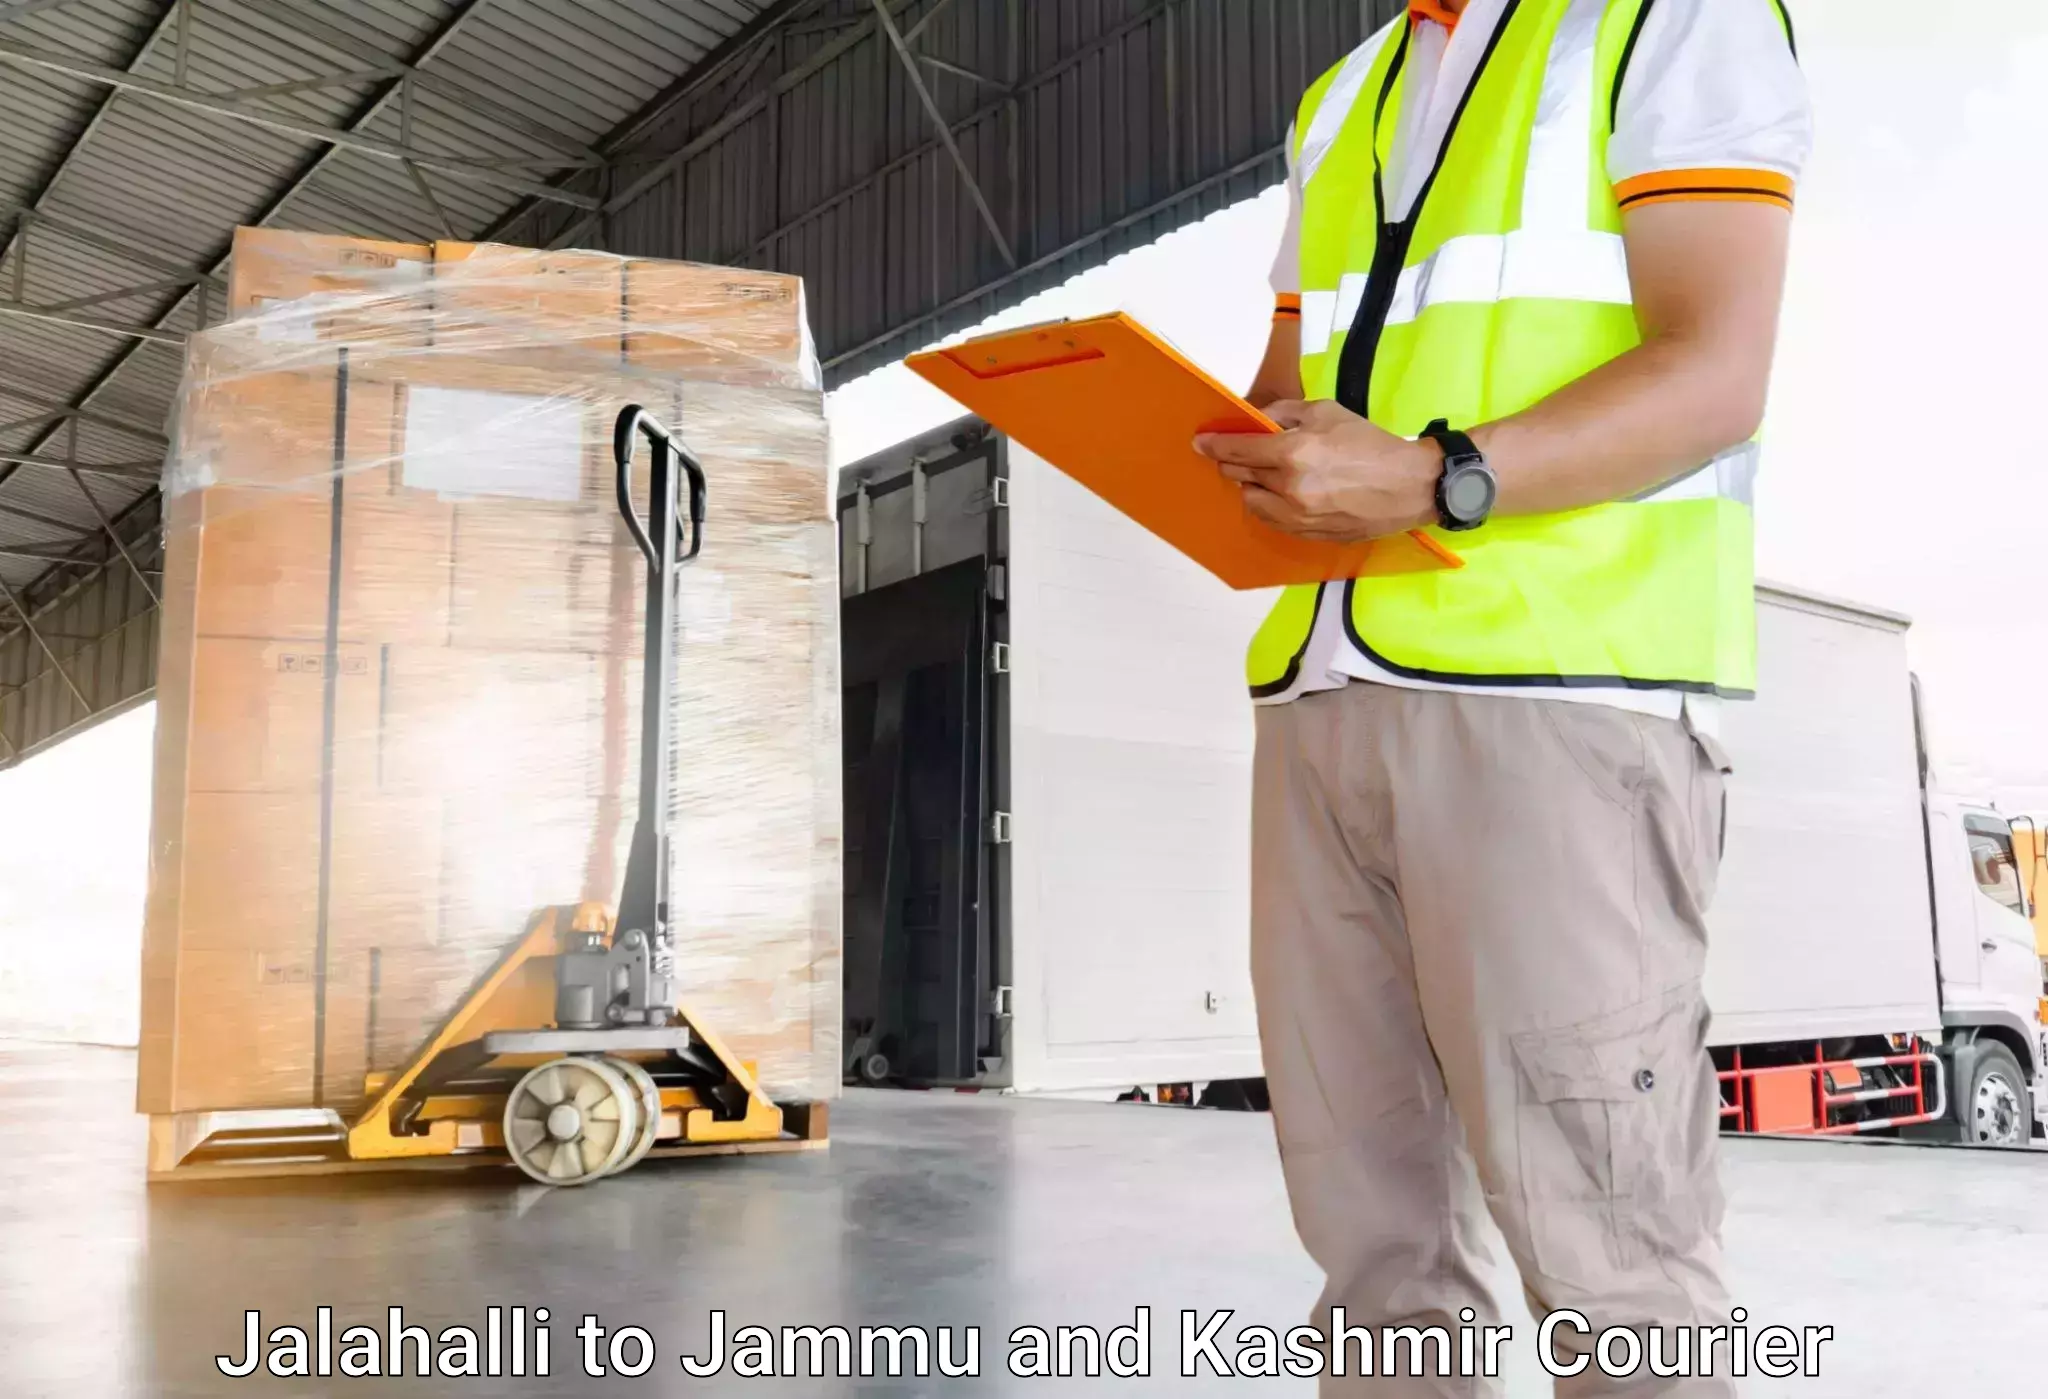 Electronic items luggage shipping Jalahalli to Baramulla